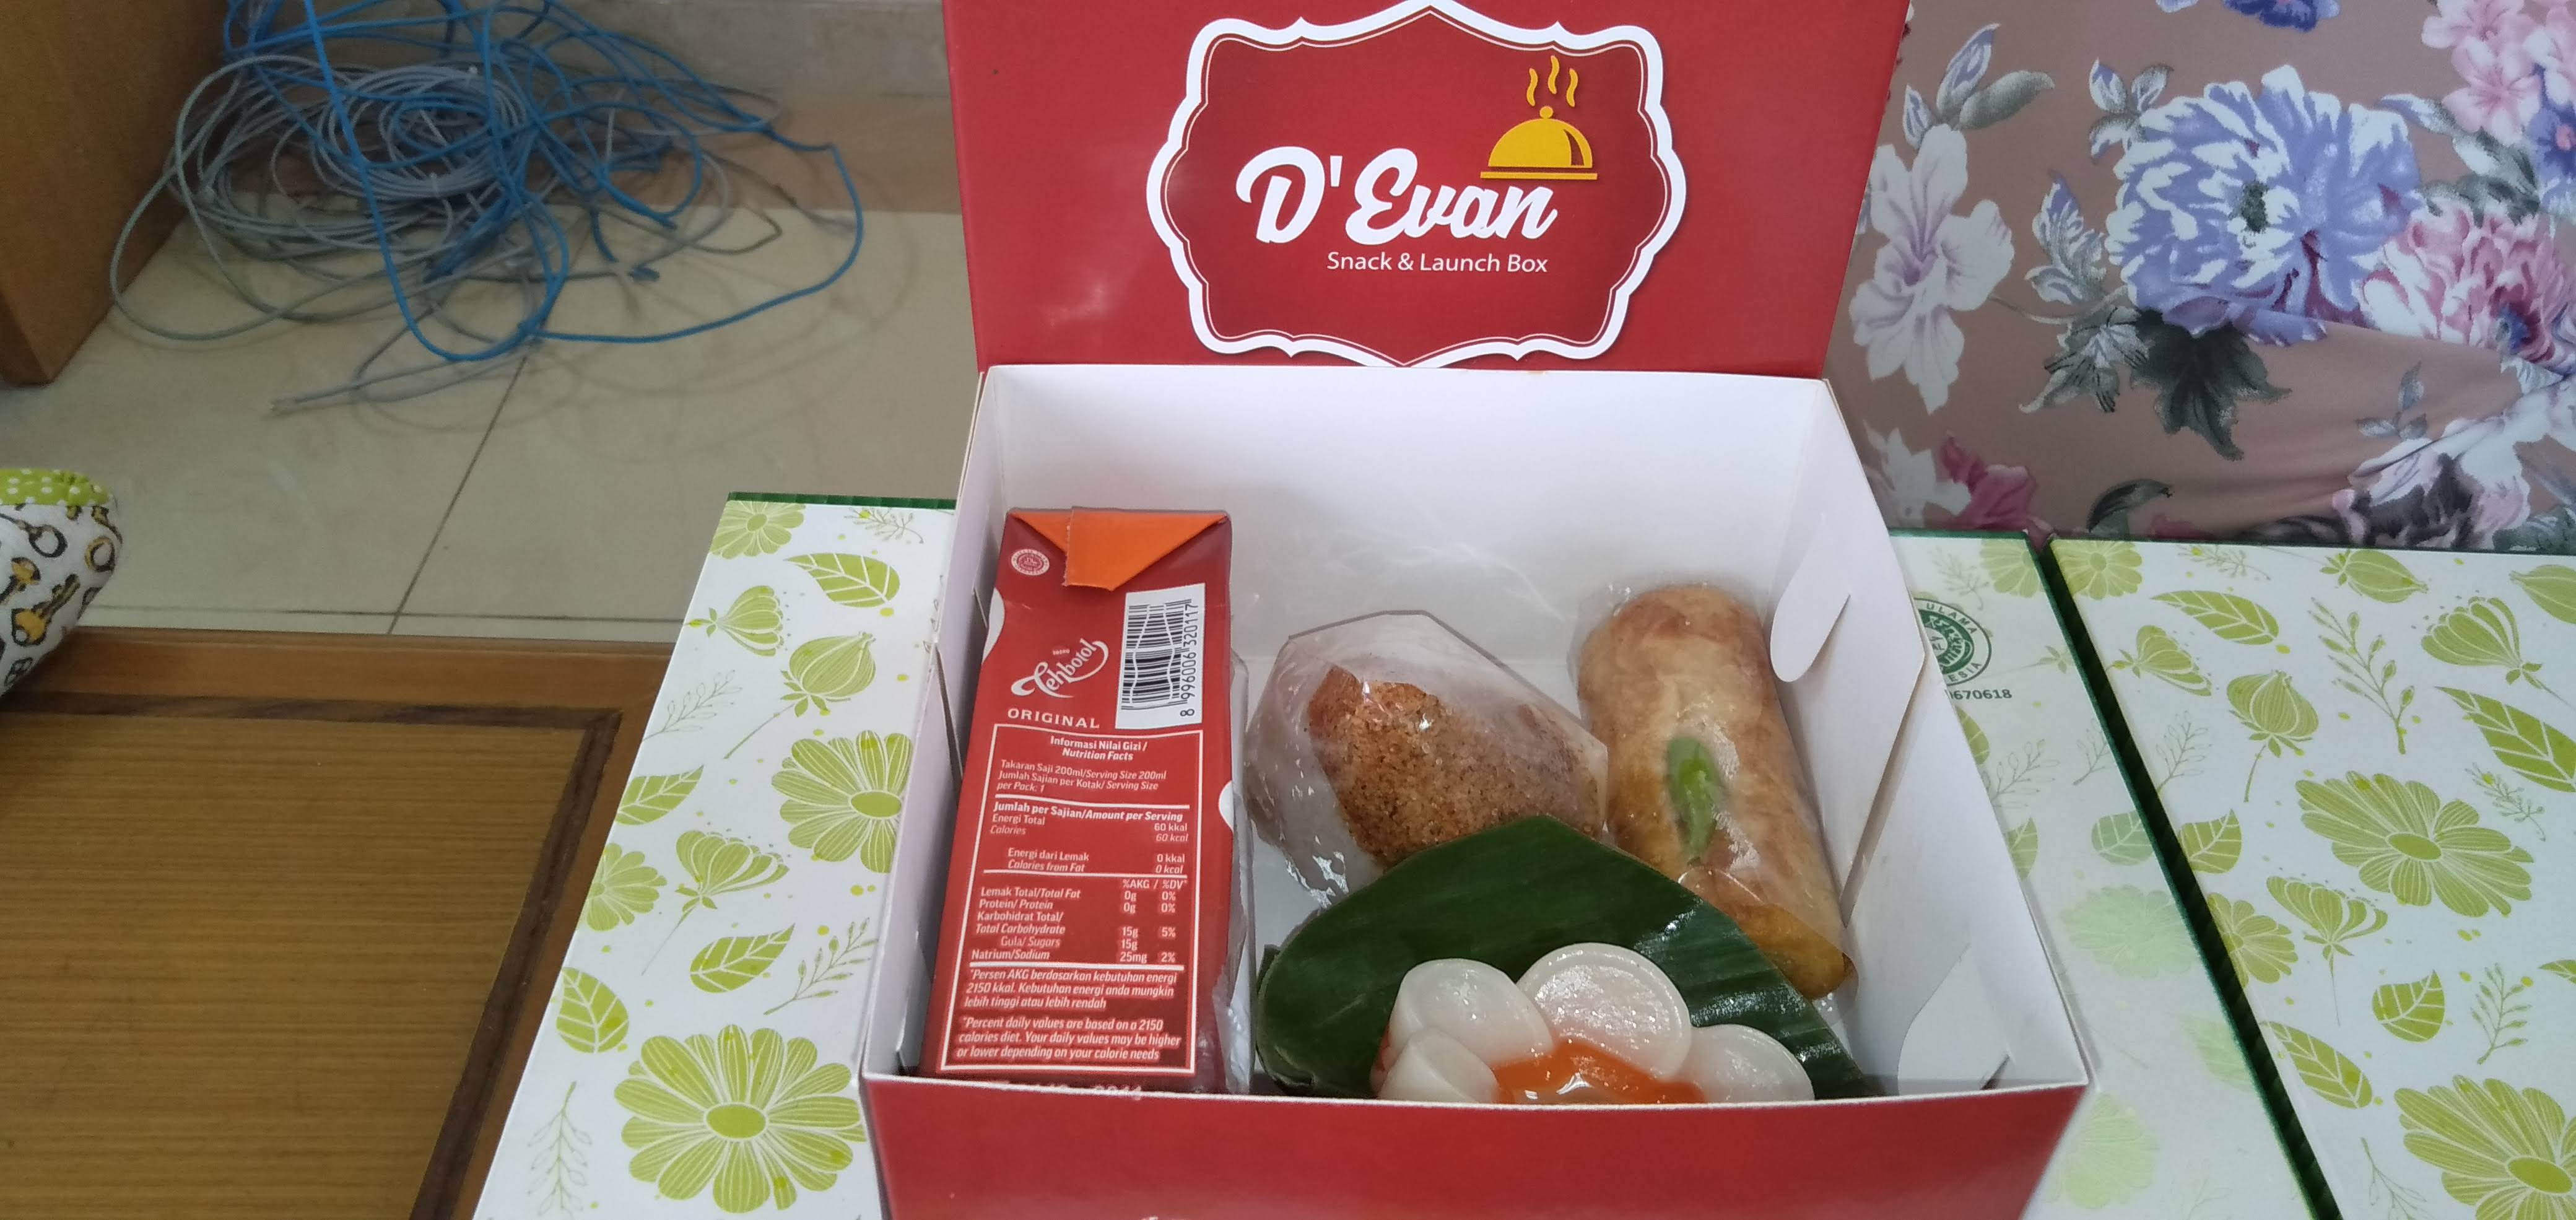 Snack Box Paket by D'Evan